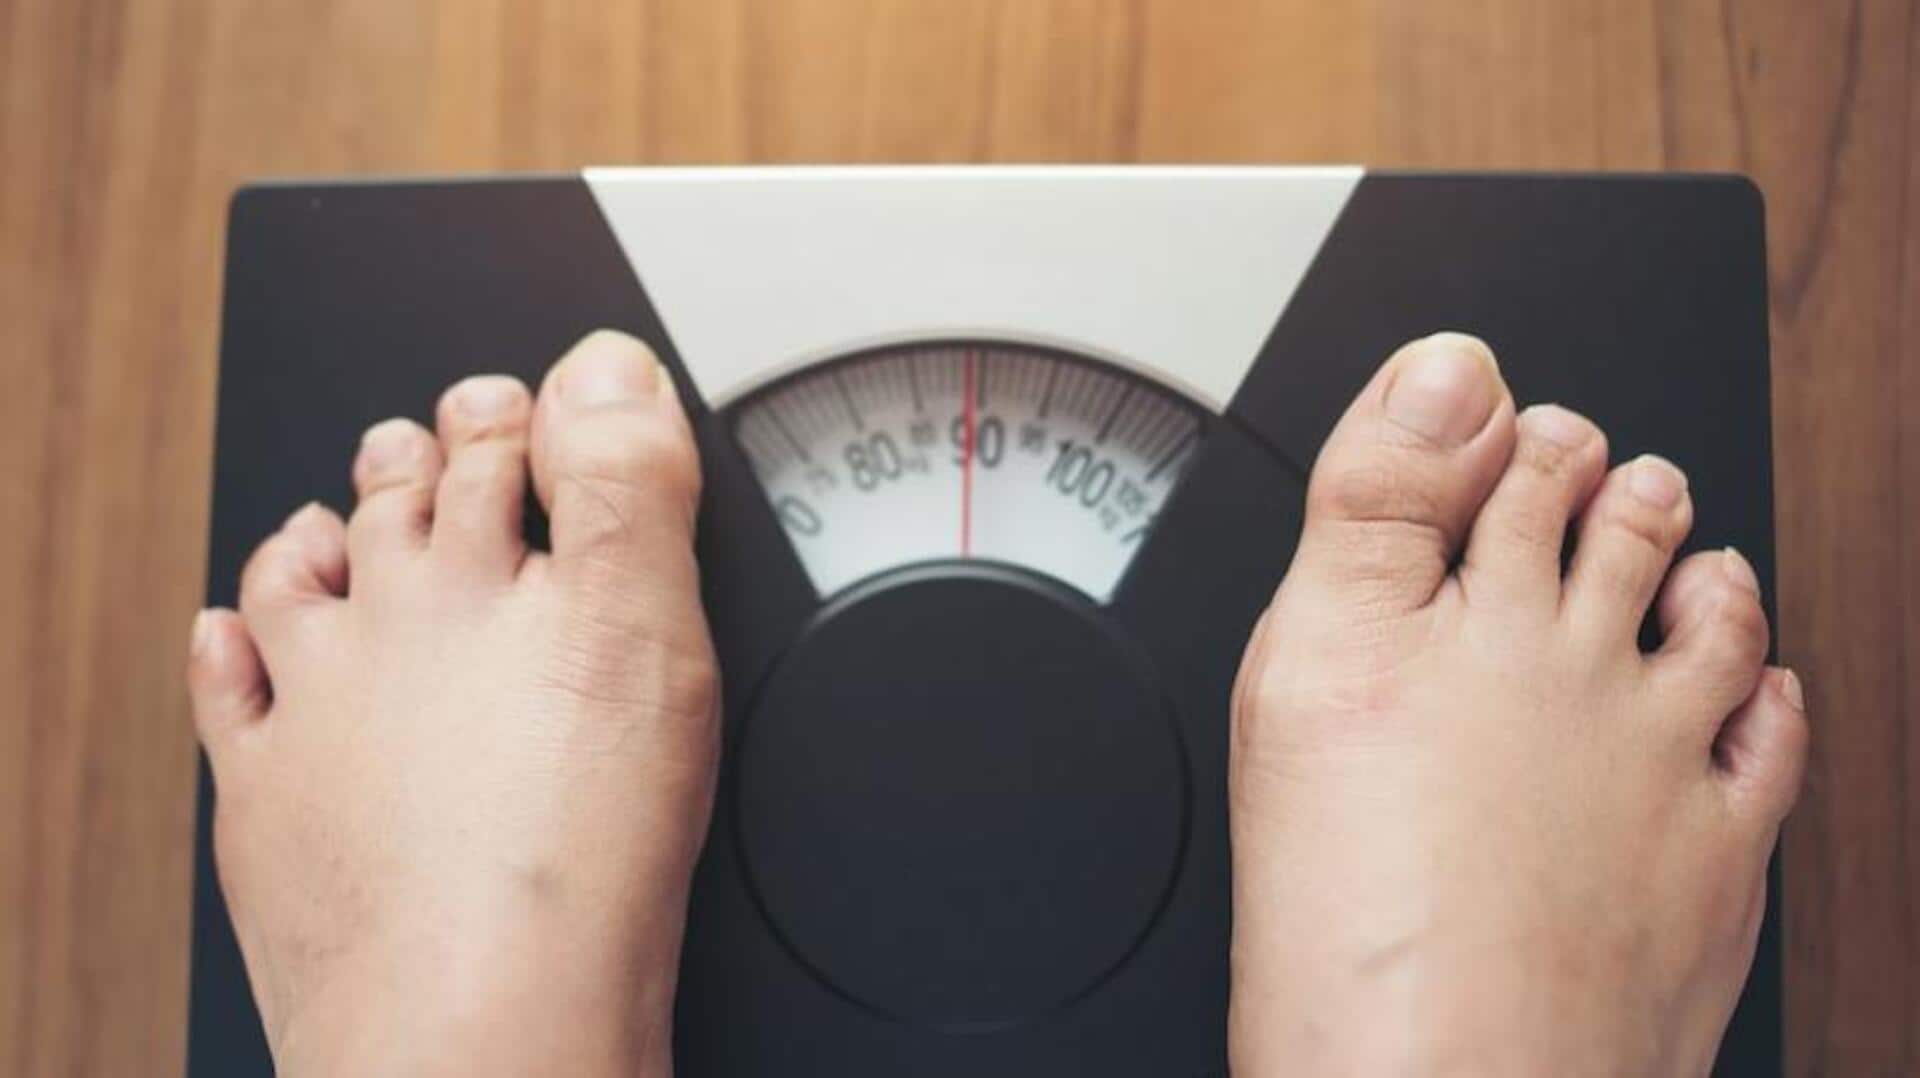 कीटो बनाम इंटरमिटेंट फास्टिंग: जानिए वजन घटाने में कौन-सी डाइट है ज्यादा प्रभावी 